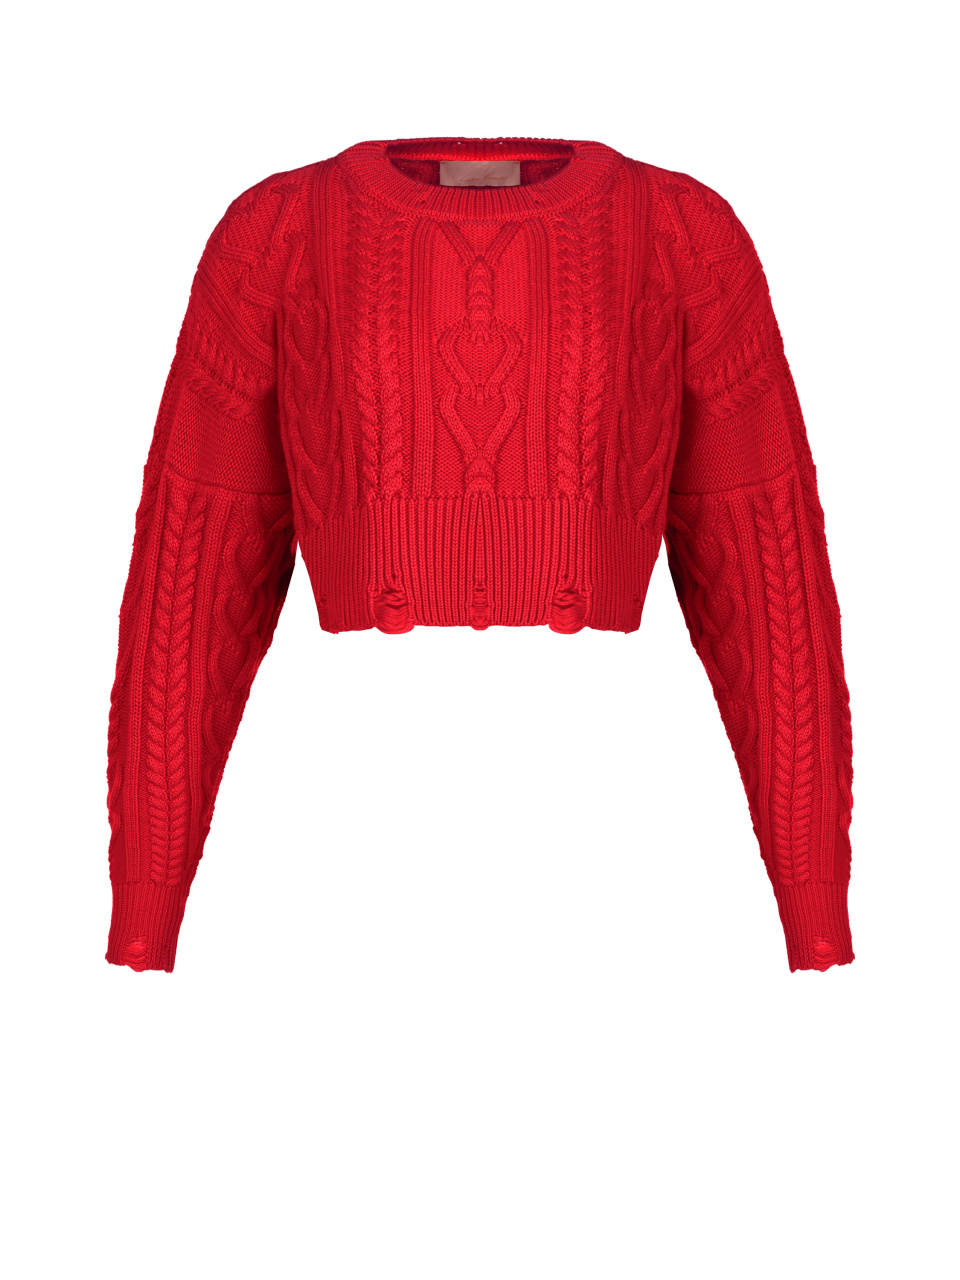 Укороченный красный свитер с косами, 1